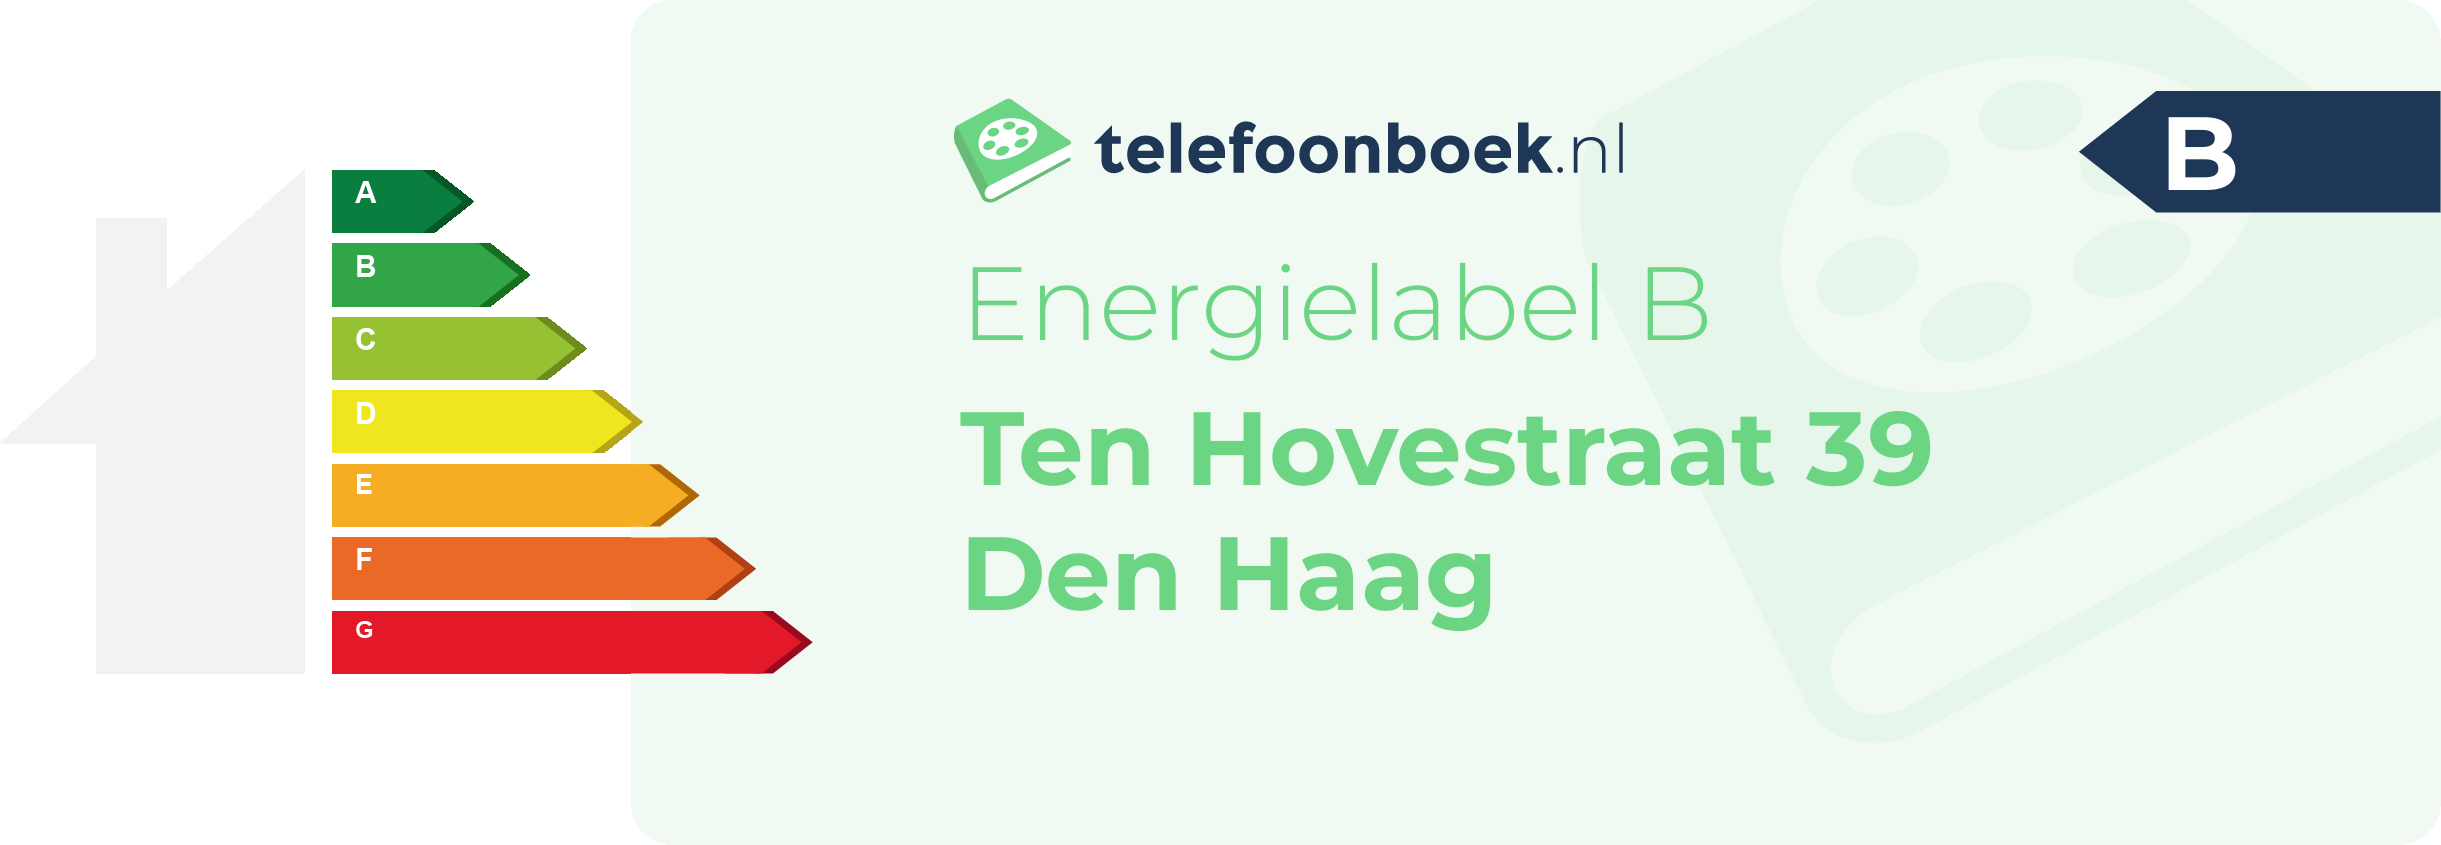 Energielabel Ten Hovestraat 39 Den Haag